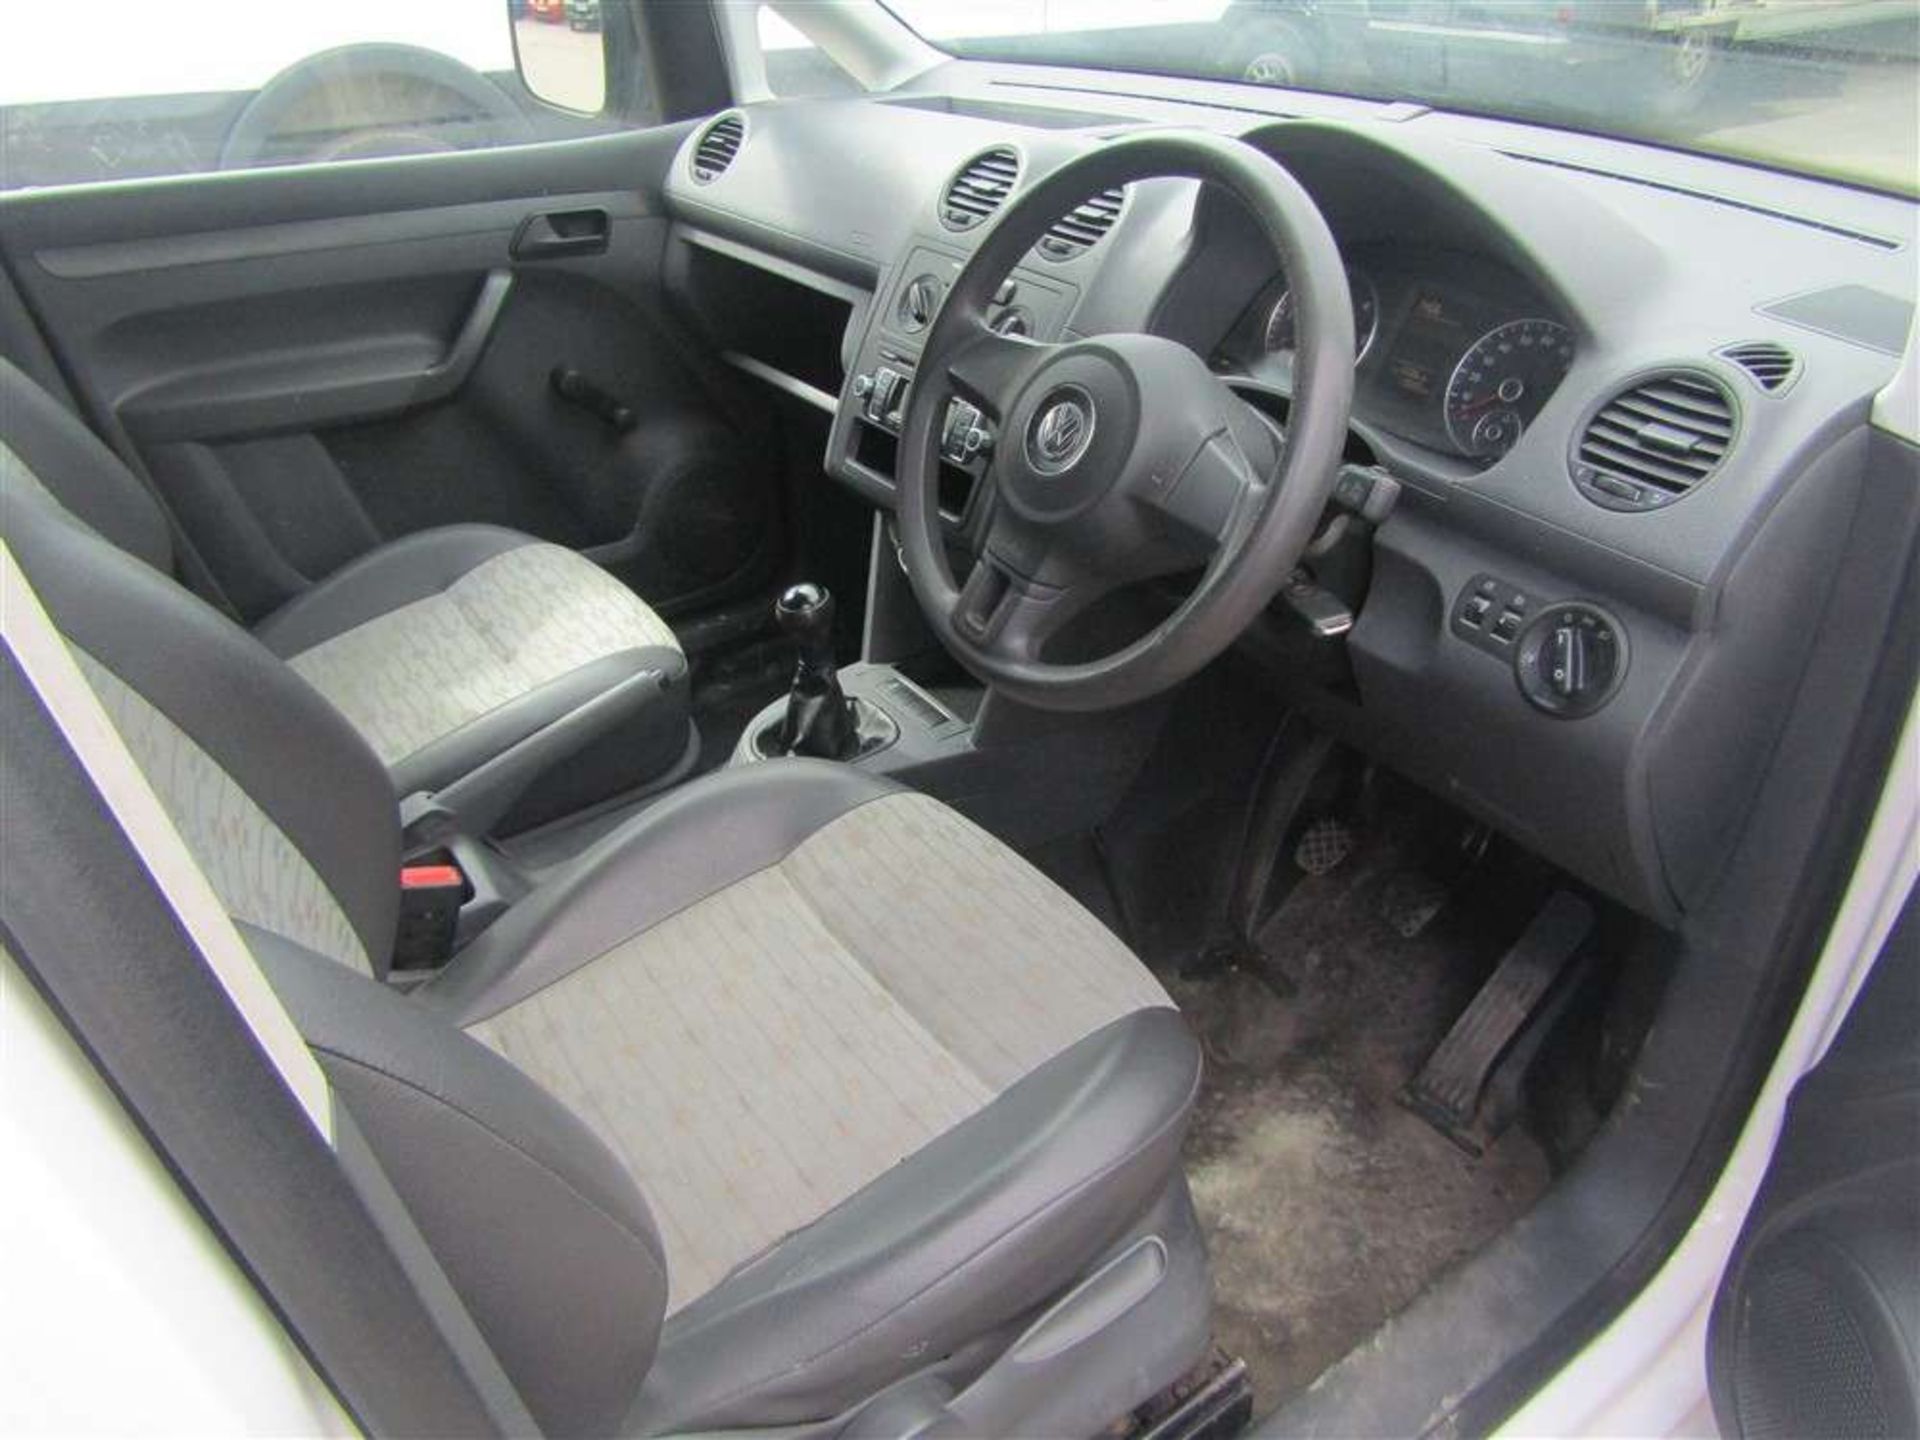 2011 60 reg VW Caddy Maxi C20 TDI - Image 7 of 7